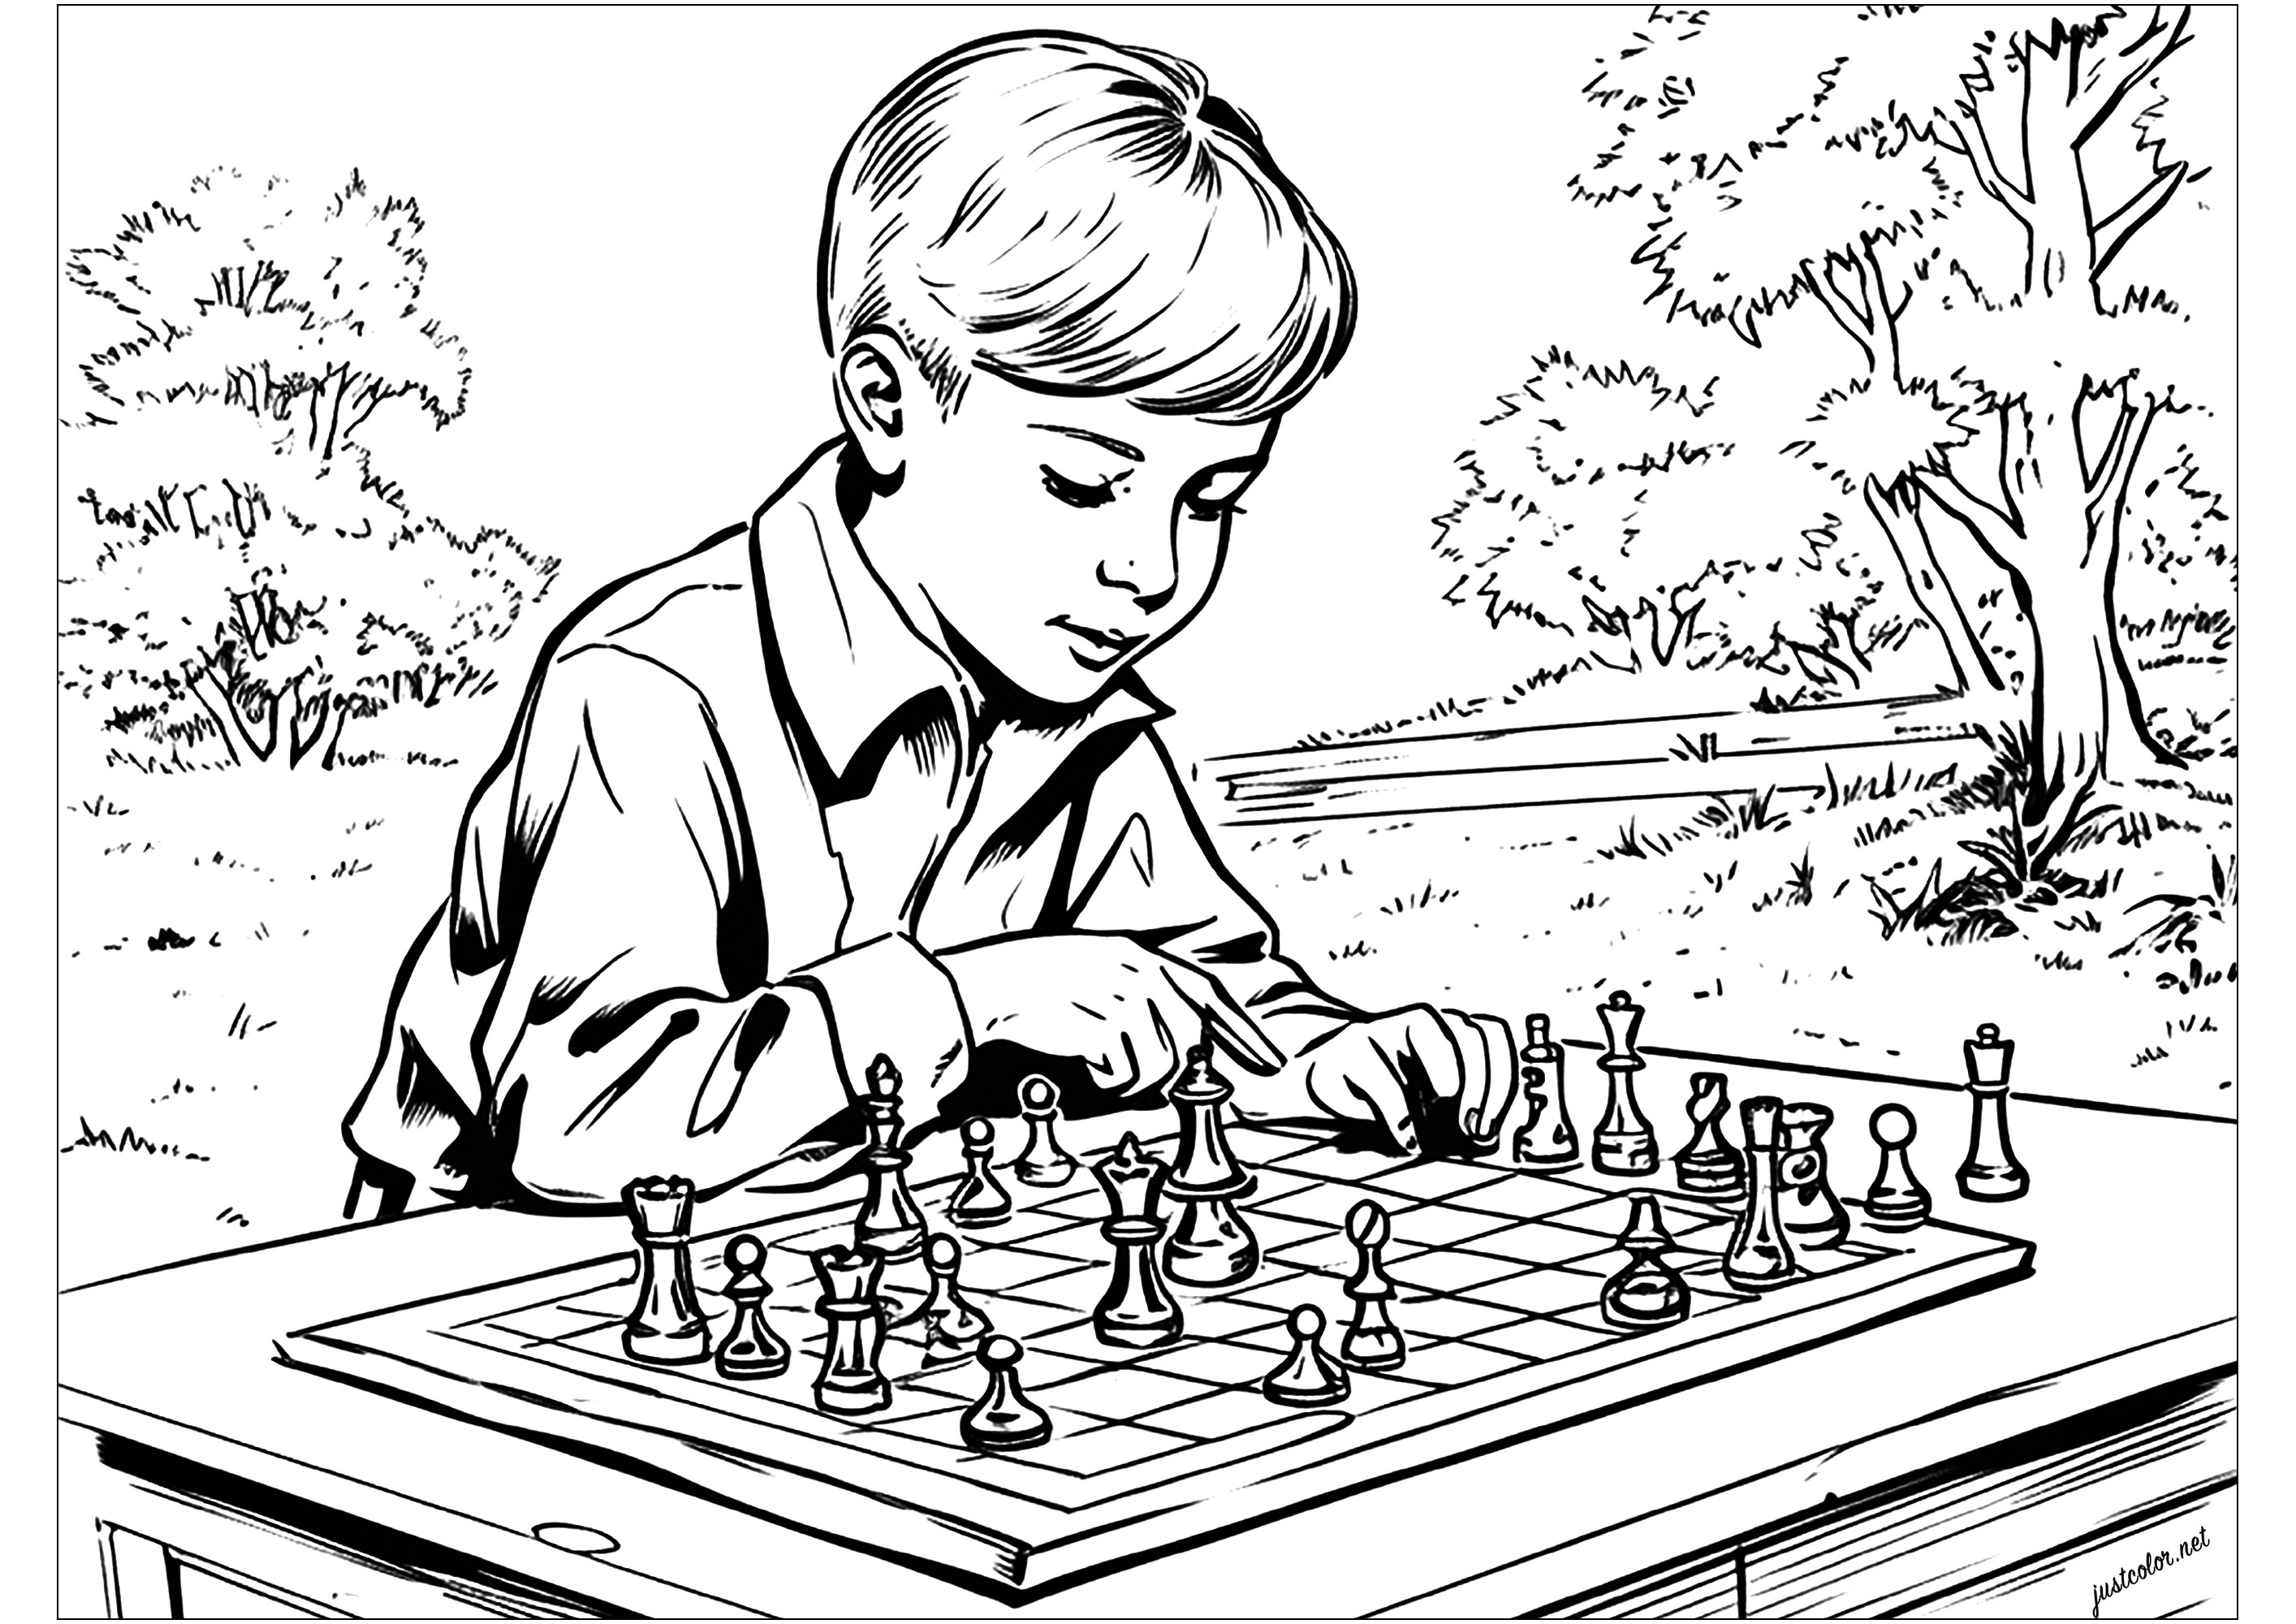 Colorir uma criança a jogar xadrez. Um estilo inspirado nas ilustrações de livros de meados do século XX